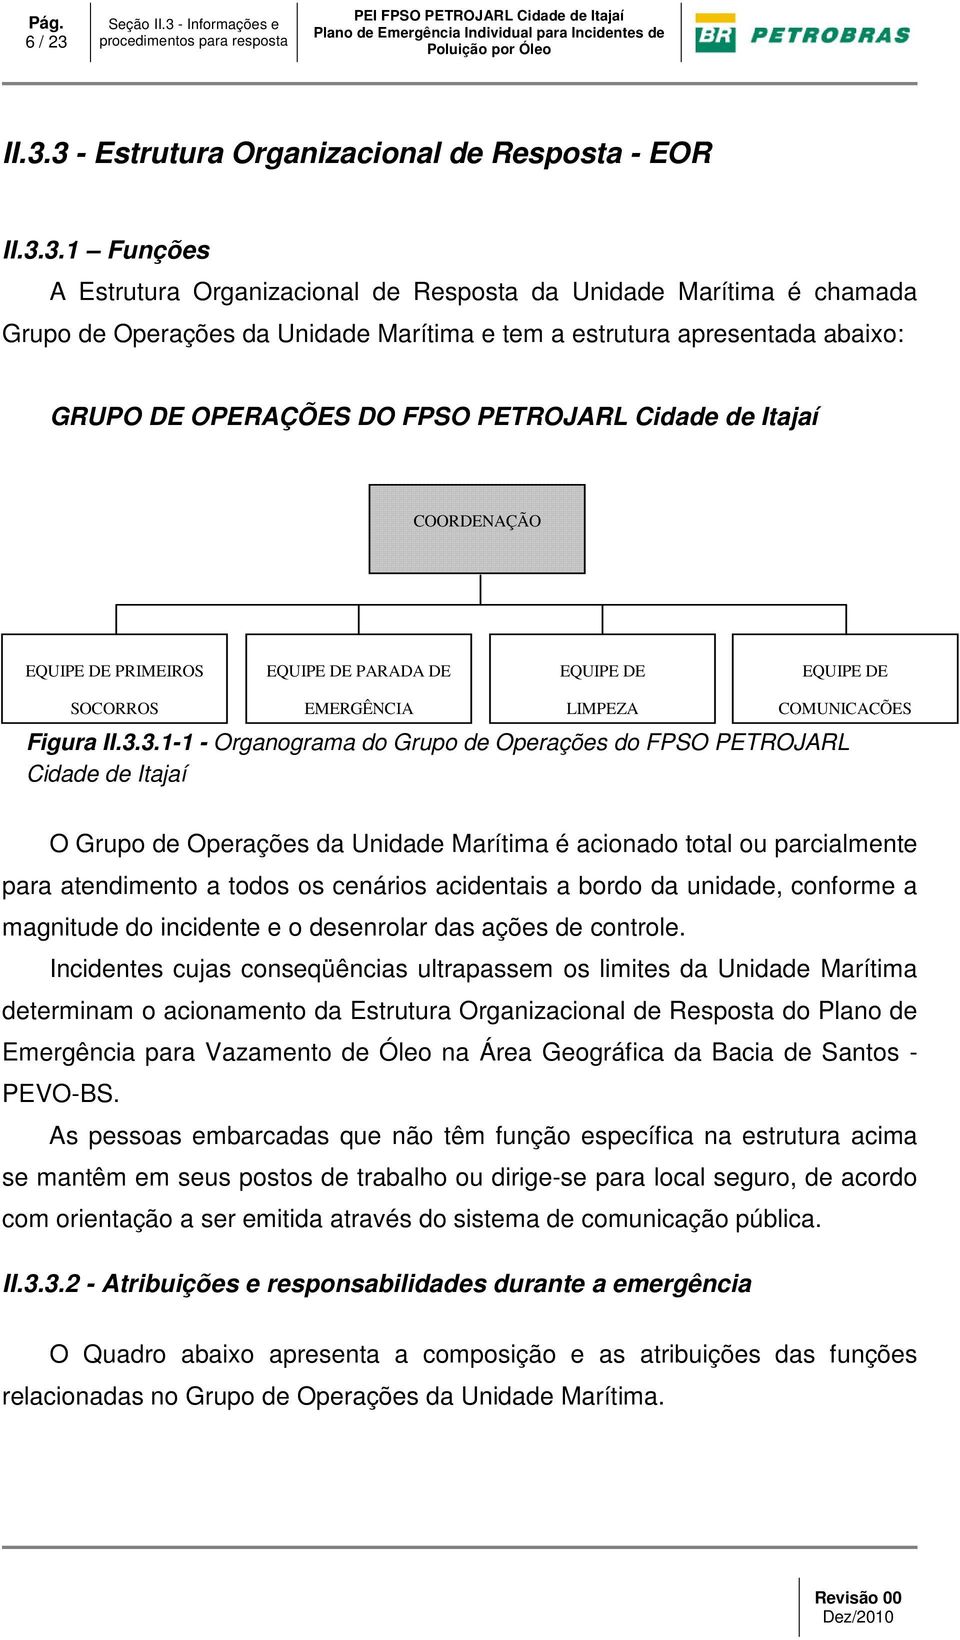 3 - Estrutura Organizacional de Resposta - EOR II.3.3.1 Funções A Estrutura Organizacional de Resposta da Unidade Marítima é chamada Grupo de Operações da Unidade Marítima e tem a estrutura